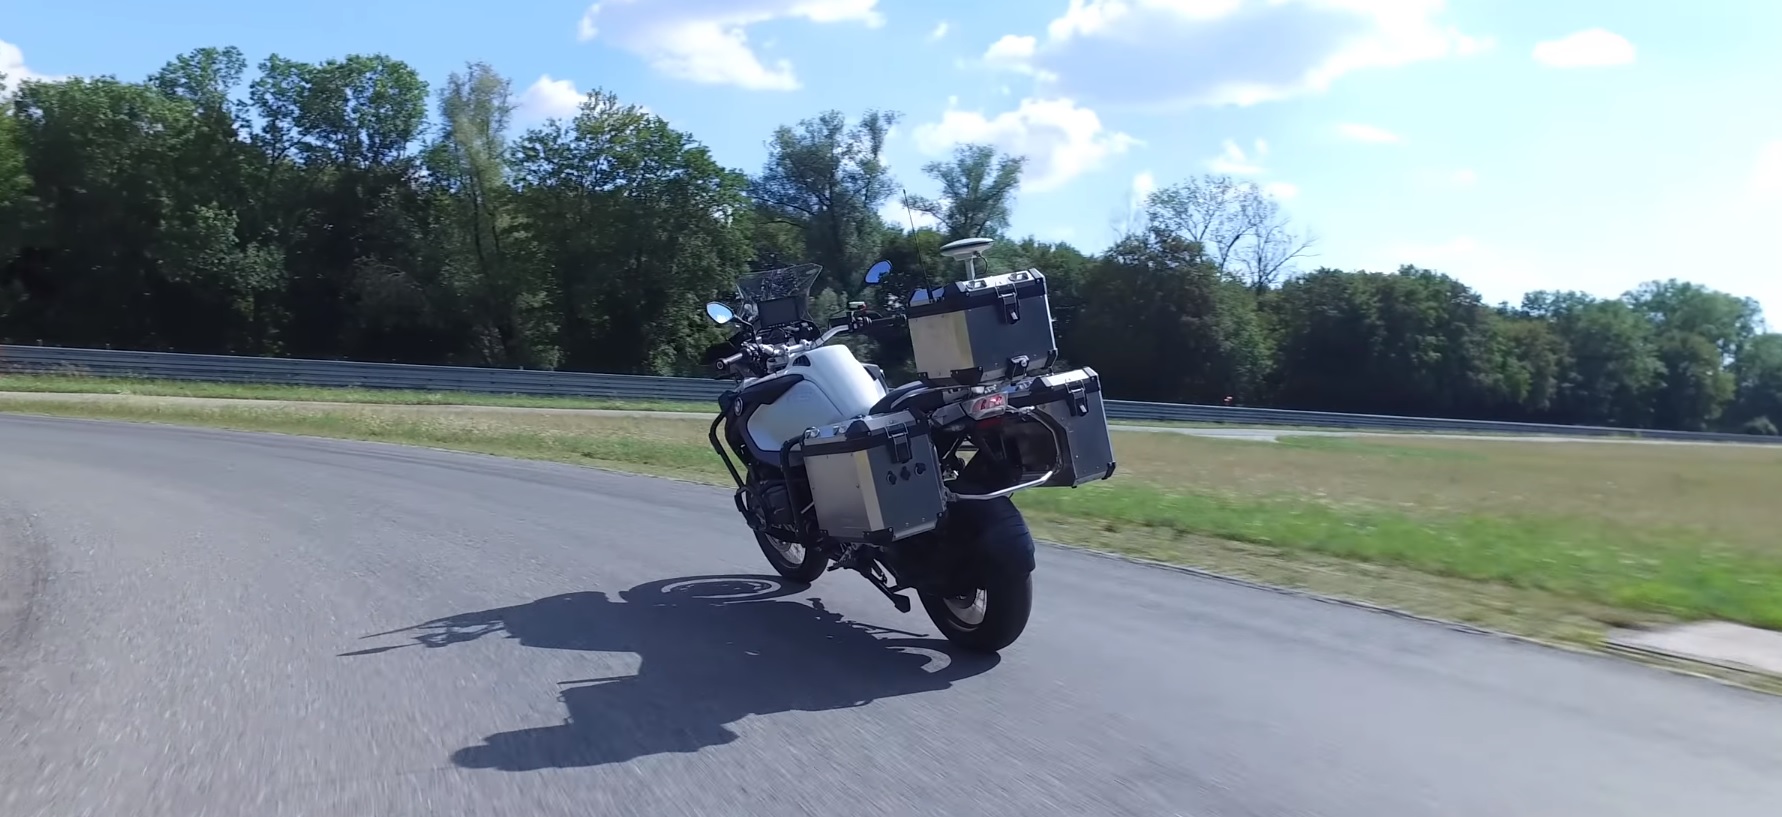 बीएमडब्ल्यू बनाया है एक मानव रहित मोटरसाइकिल परीक्षण करने के लिए नई सुरक्षा प्रणालियों